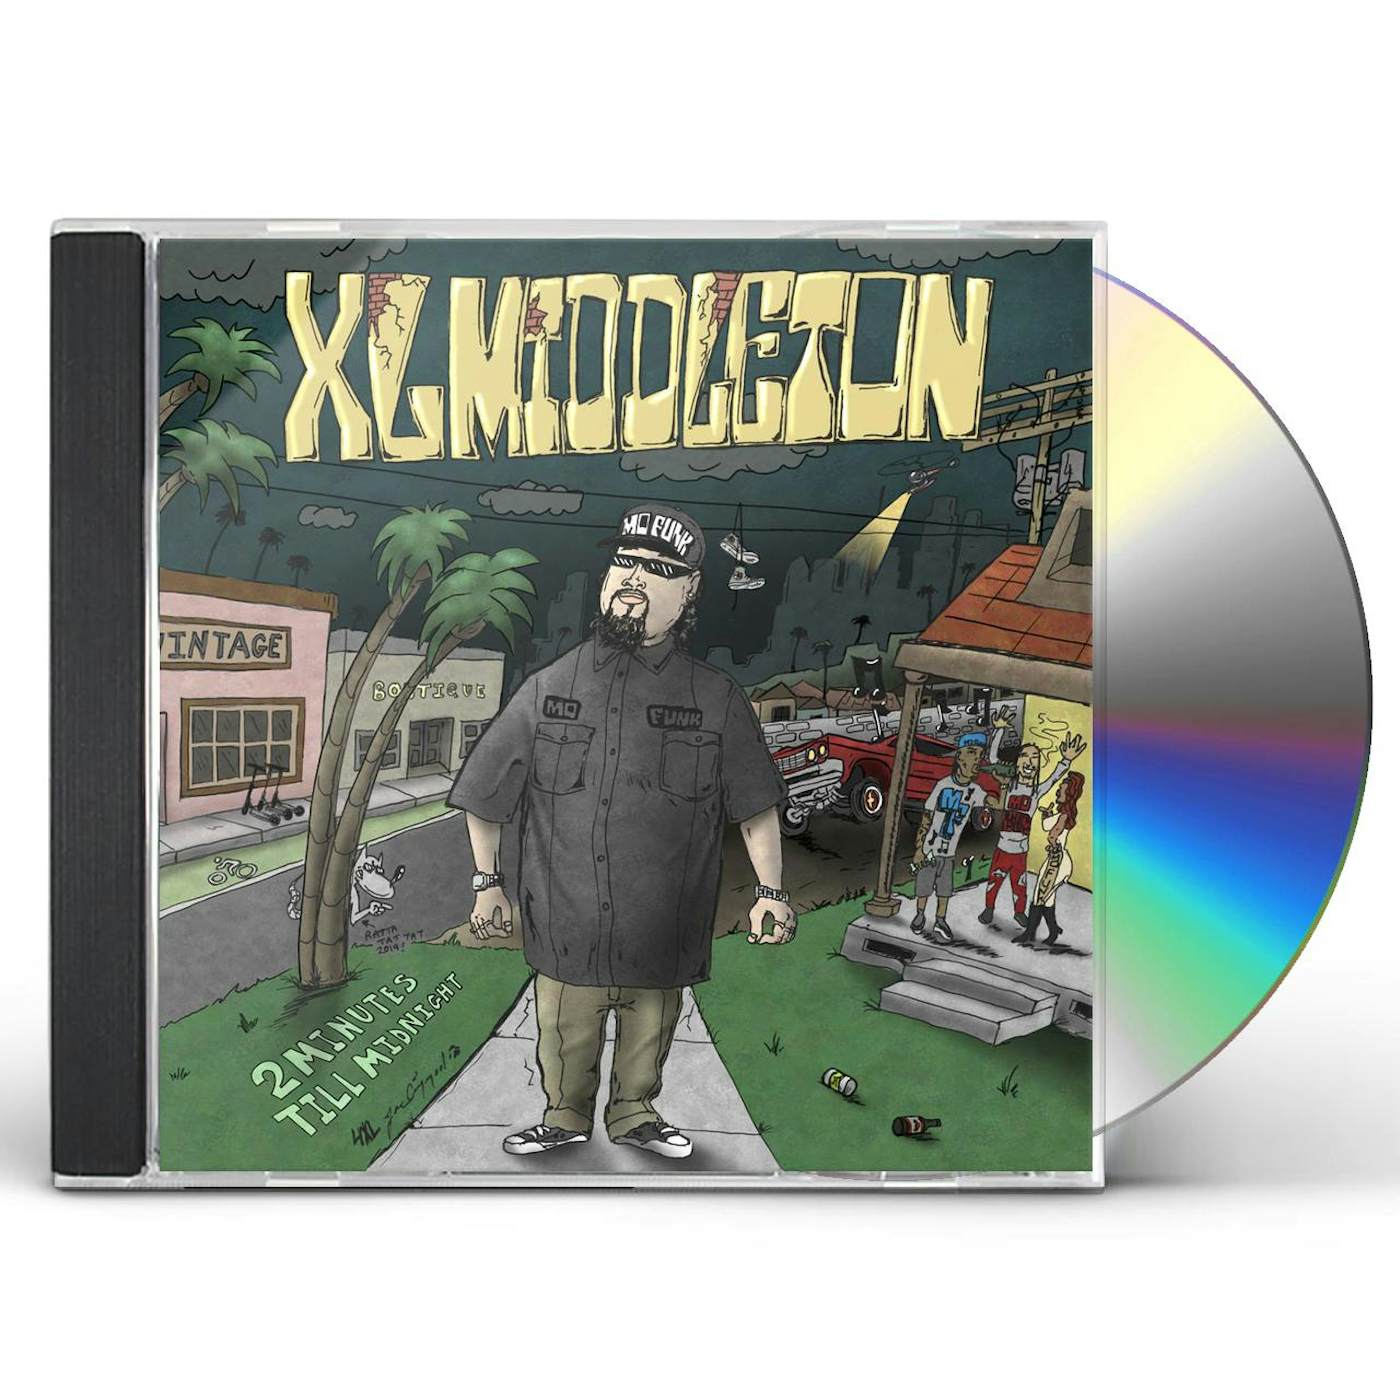 XL Middleton 2 MINUTES TILL MIDNIGHT CD